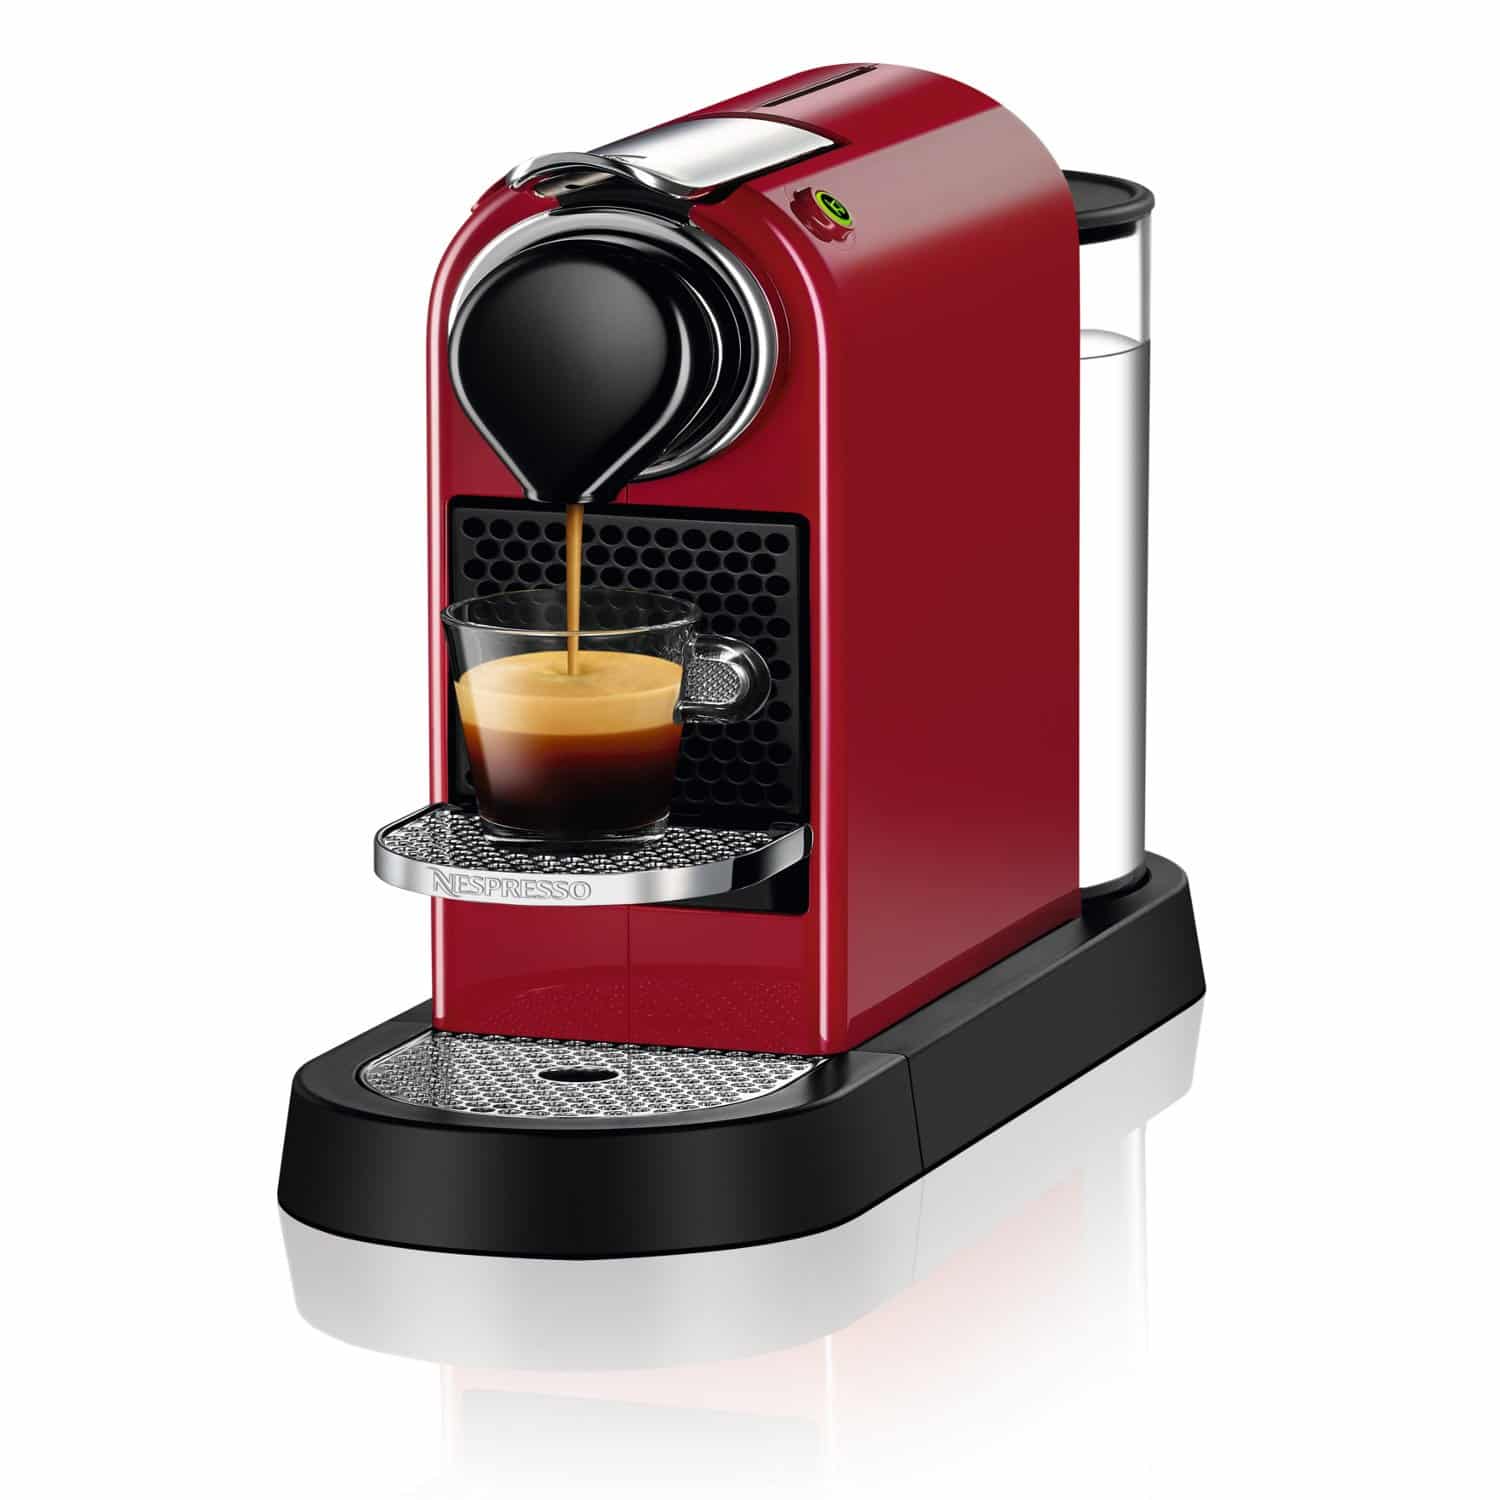 Best 5. nespresso expert espresso machine